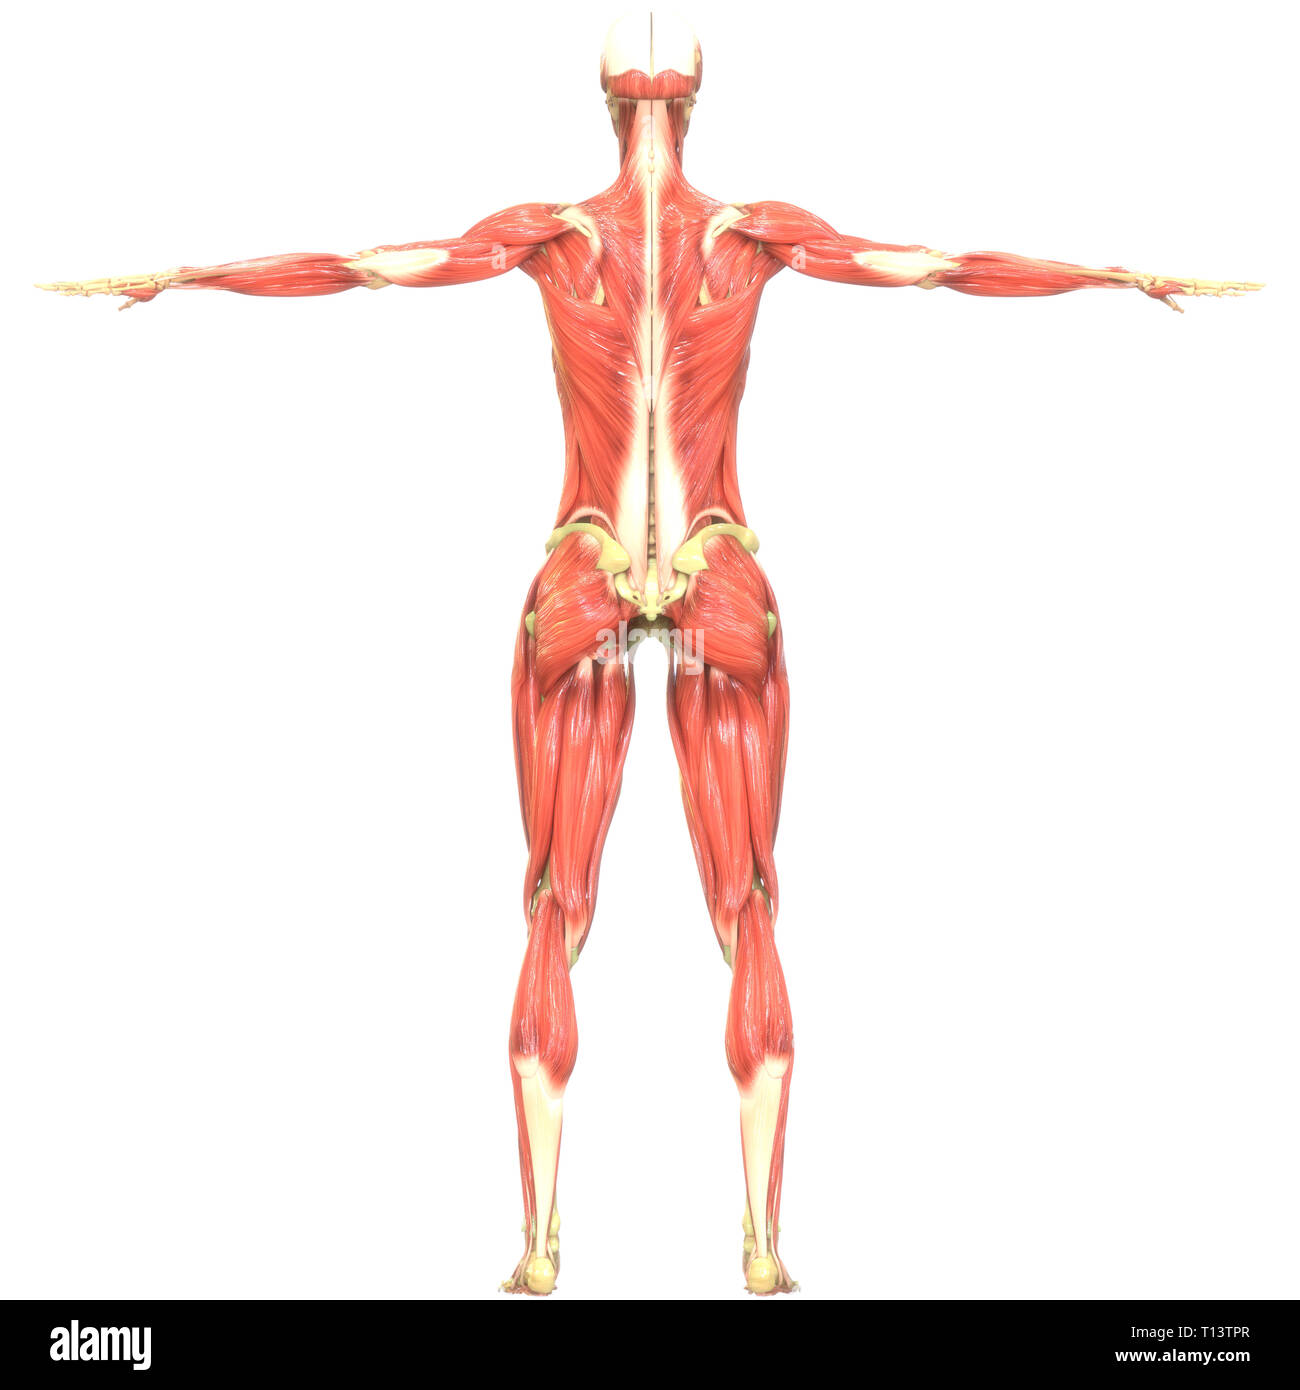 Anatomia Los Musculos Del Cuerpo Humano Fotografia De Stock Alamy